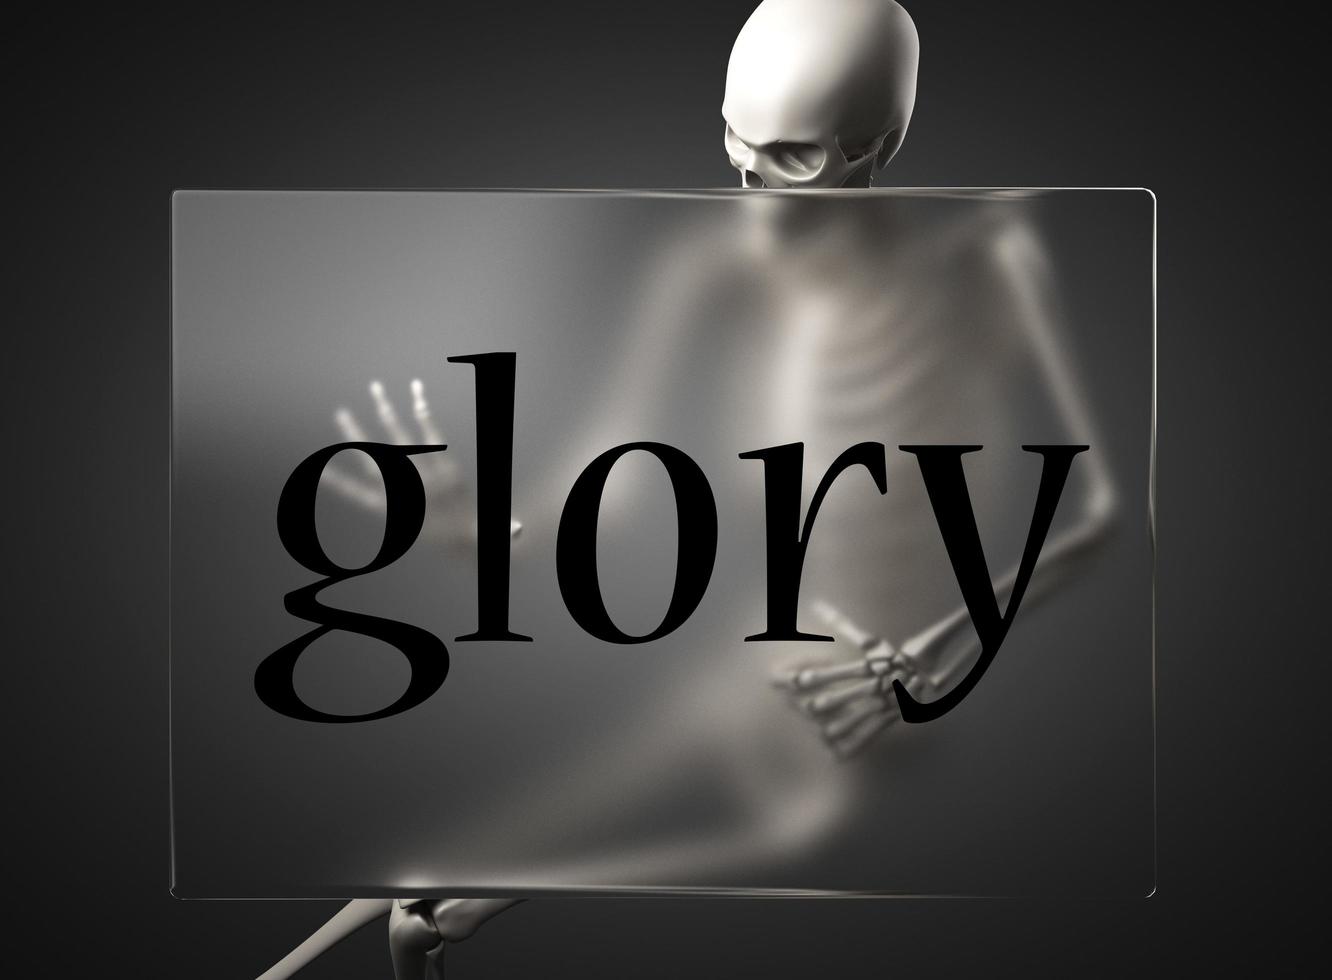 palabra de gloria en vidrio y esqueleto foto